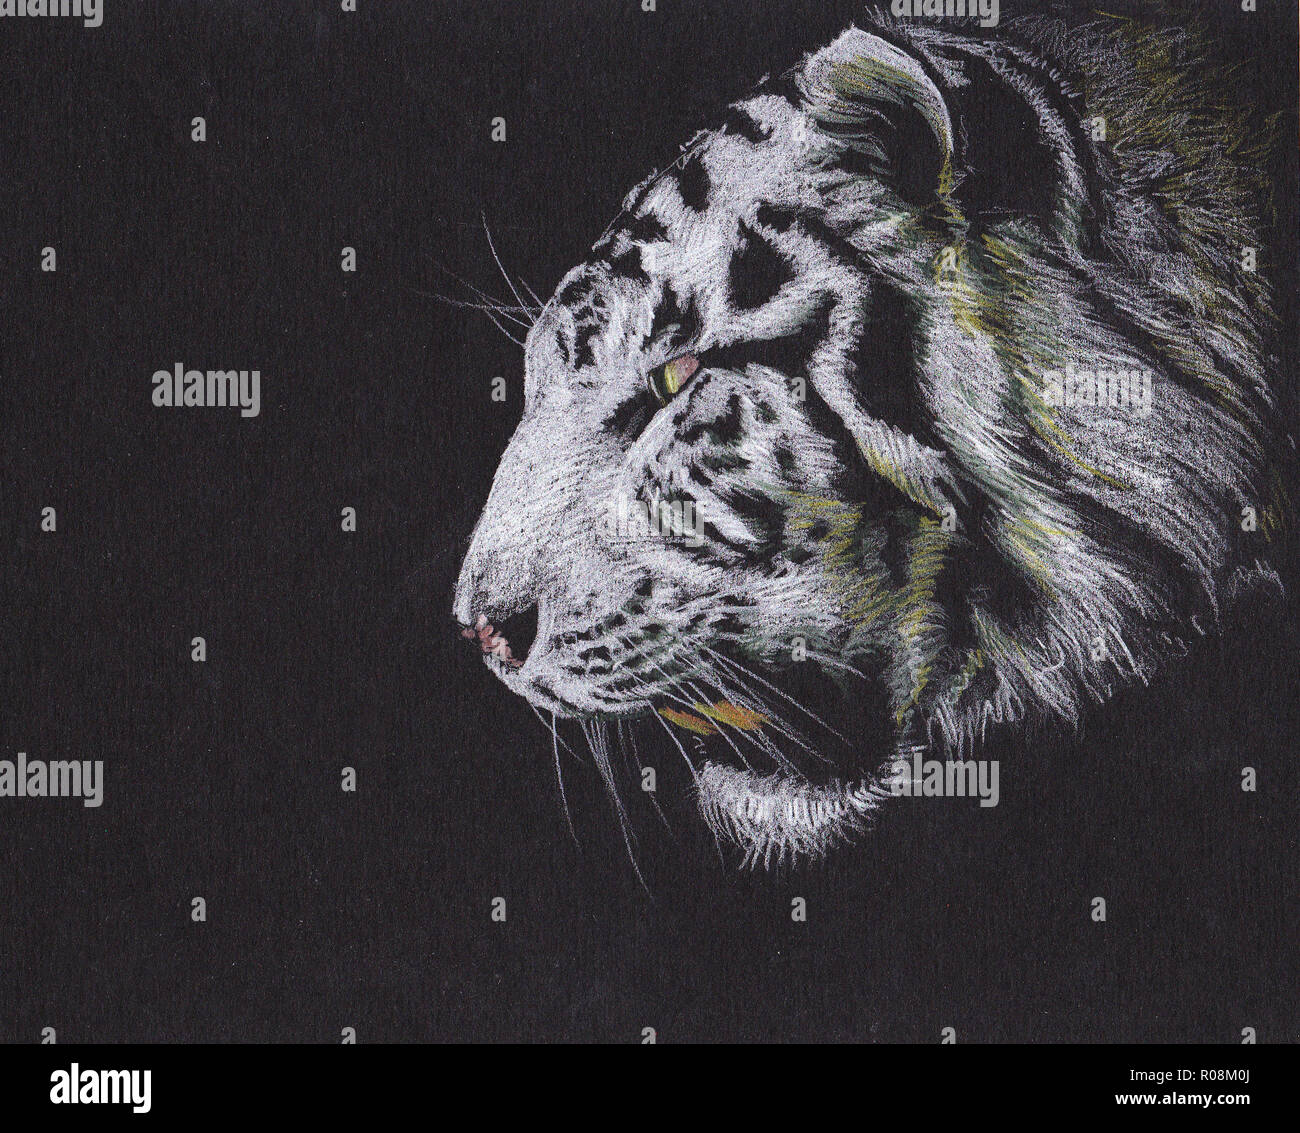 Abbildung des weißen Tigers. Tiger brüllendes Porträt. Handgefertigte Zeichnung. Stockfoto